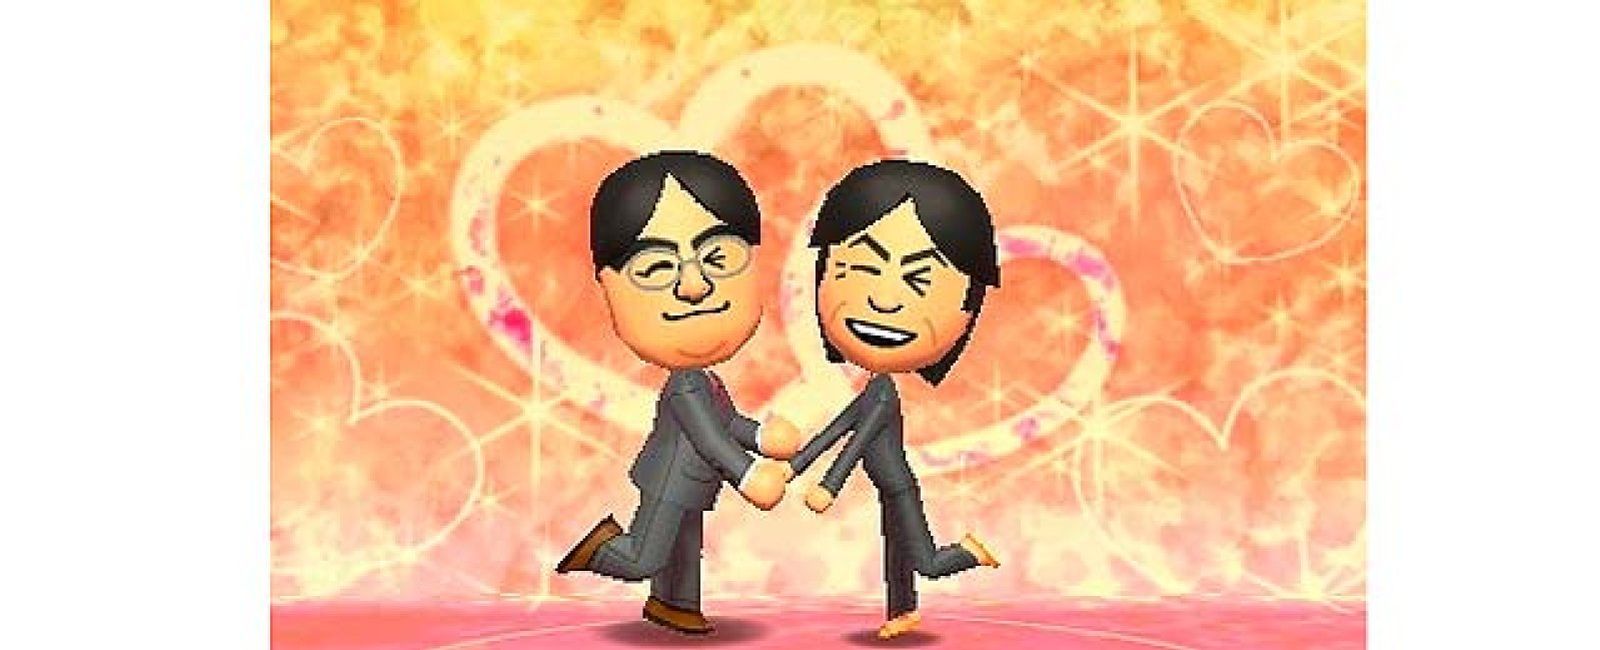 Foto: Nintendo desata la polémica al considerar "extrañas" las relaciones homosexuales